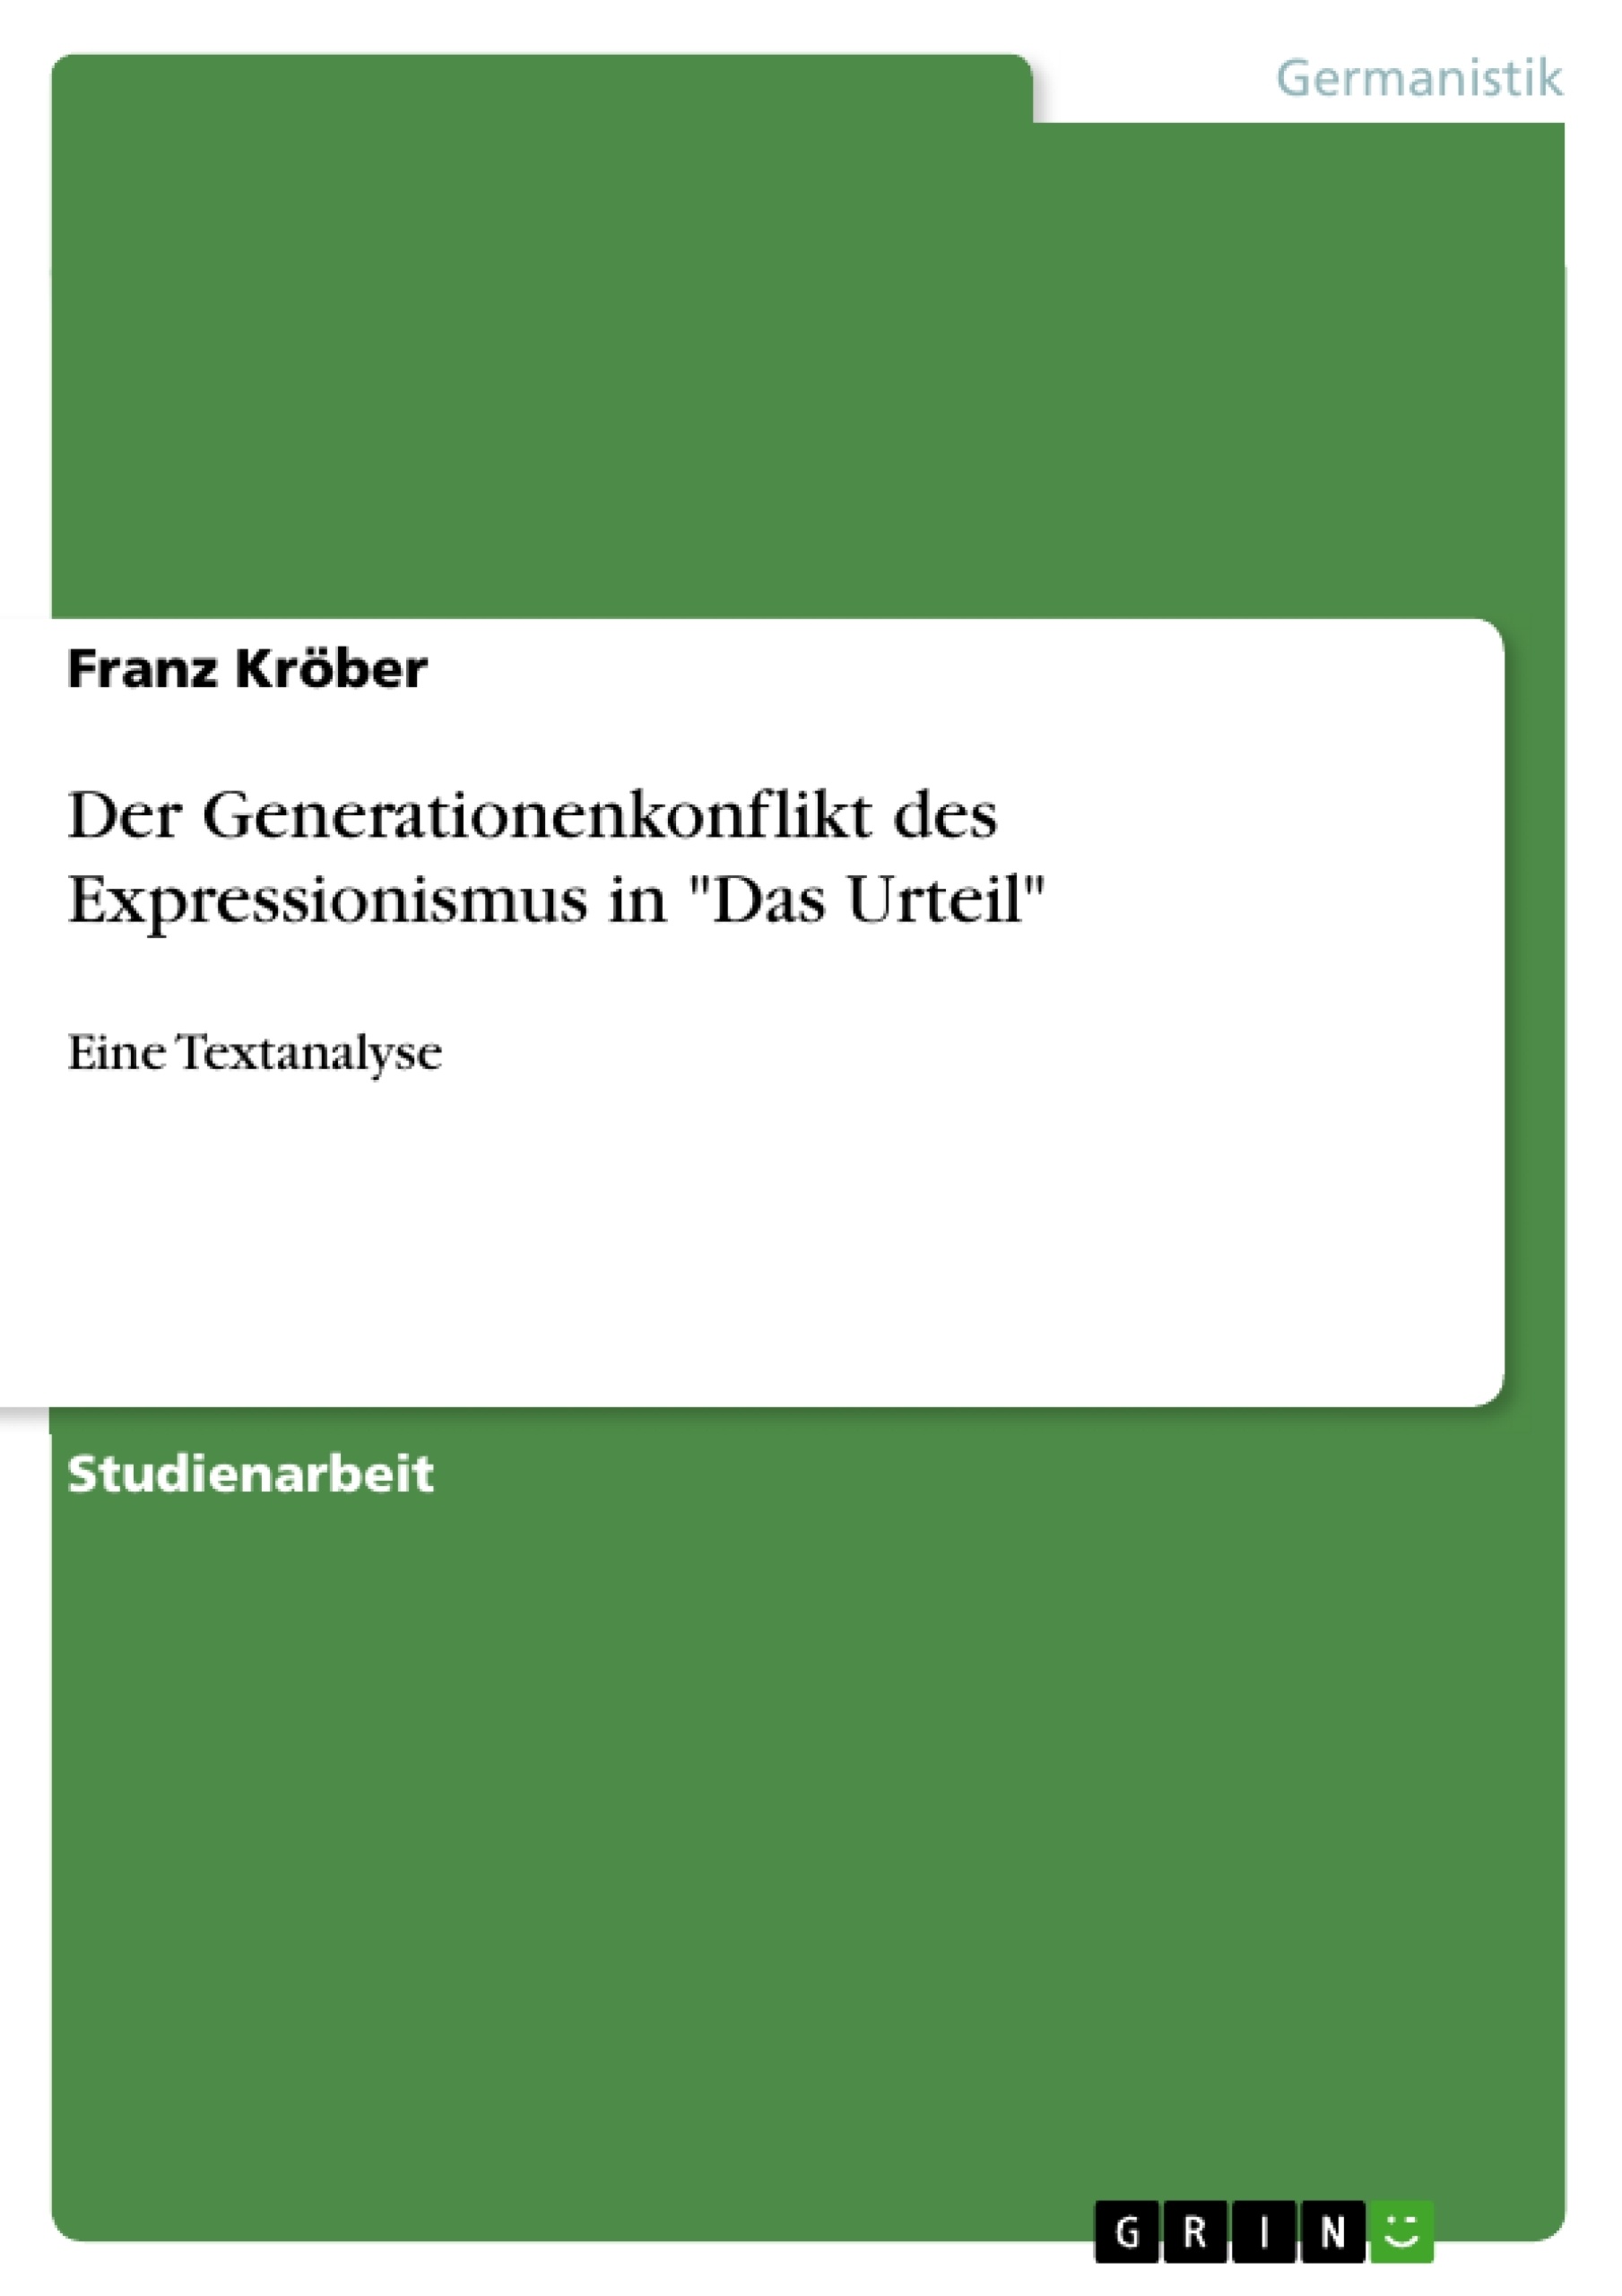 Título: Der Generationenkonflikt des Expressionismus in "Das Urteil"